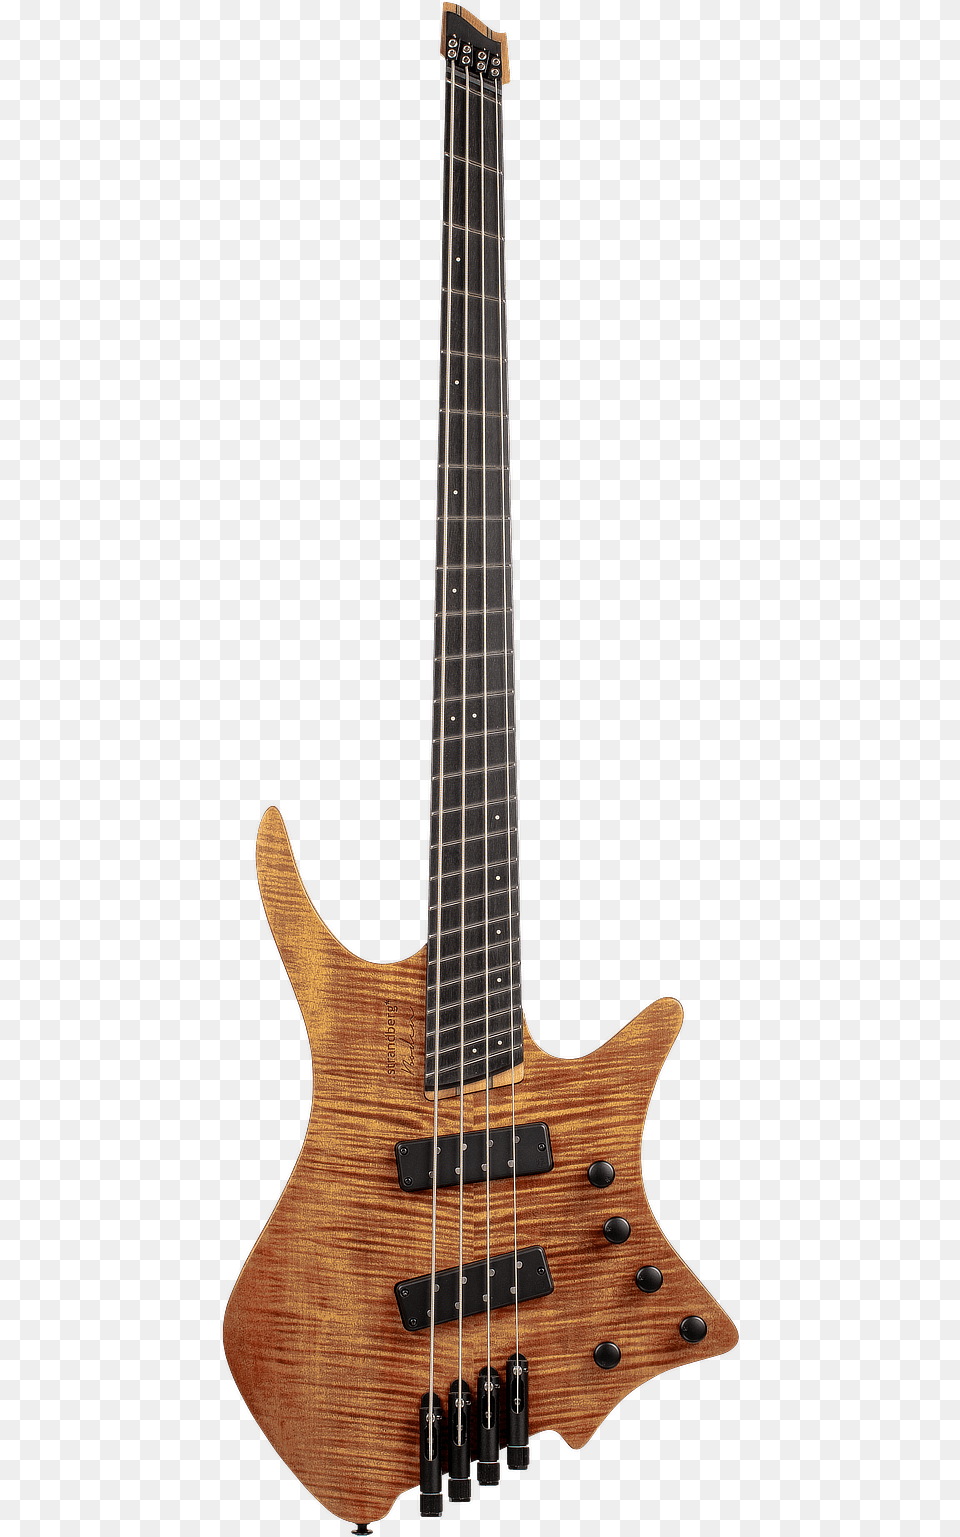 Strandberg Boden Bass, Bass Guitar, Guitar, Musical Instrument Png Image